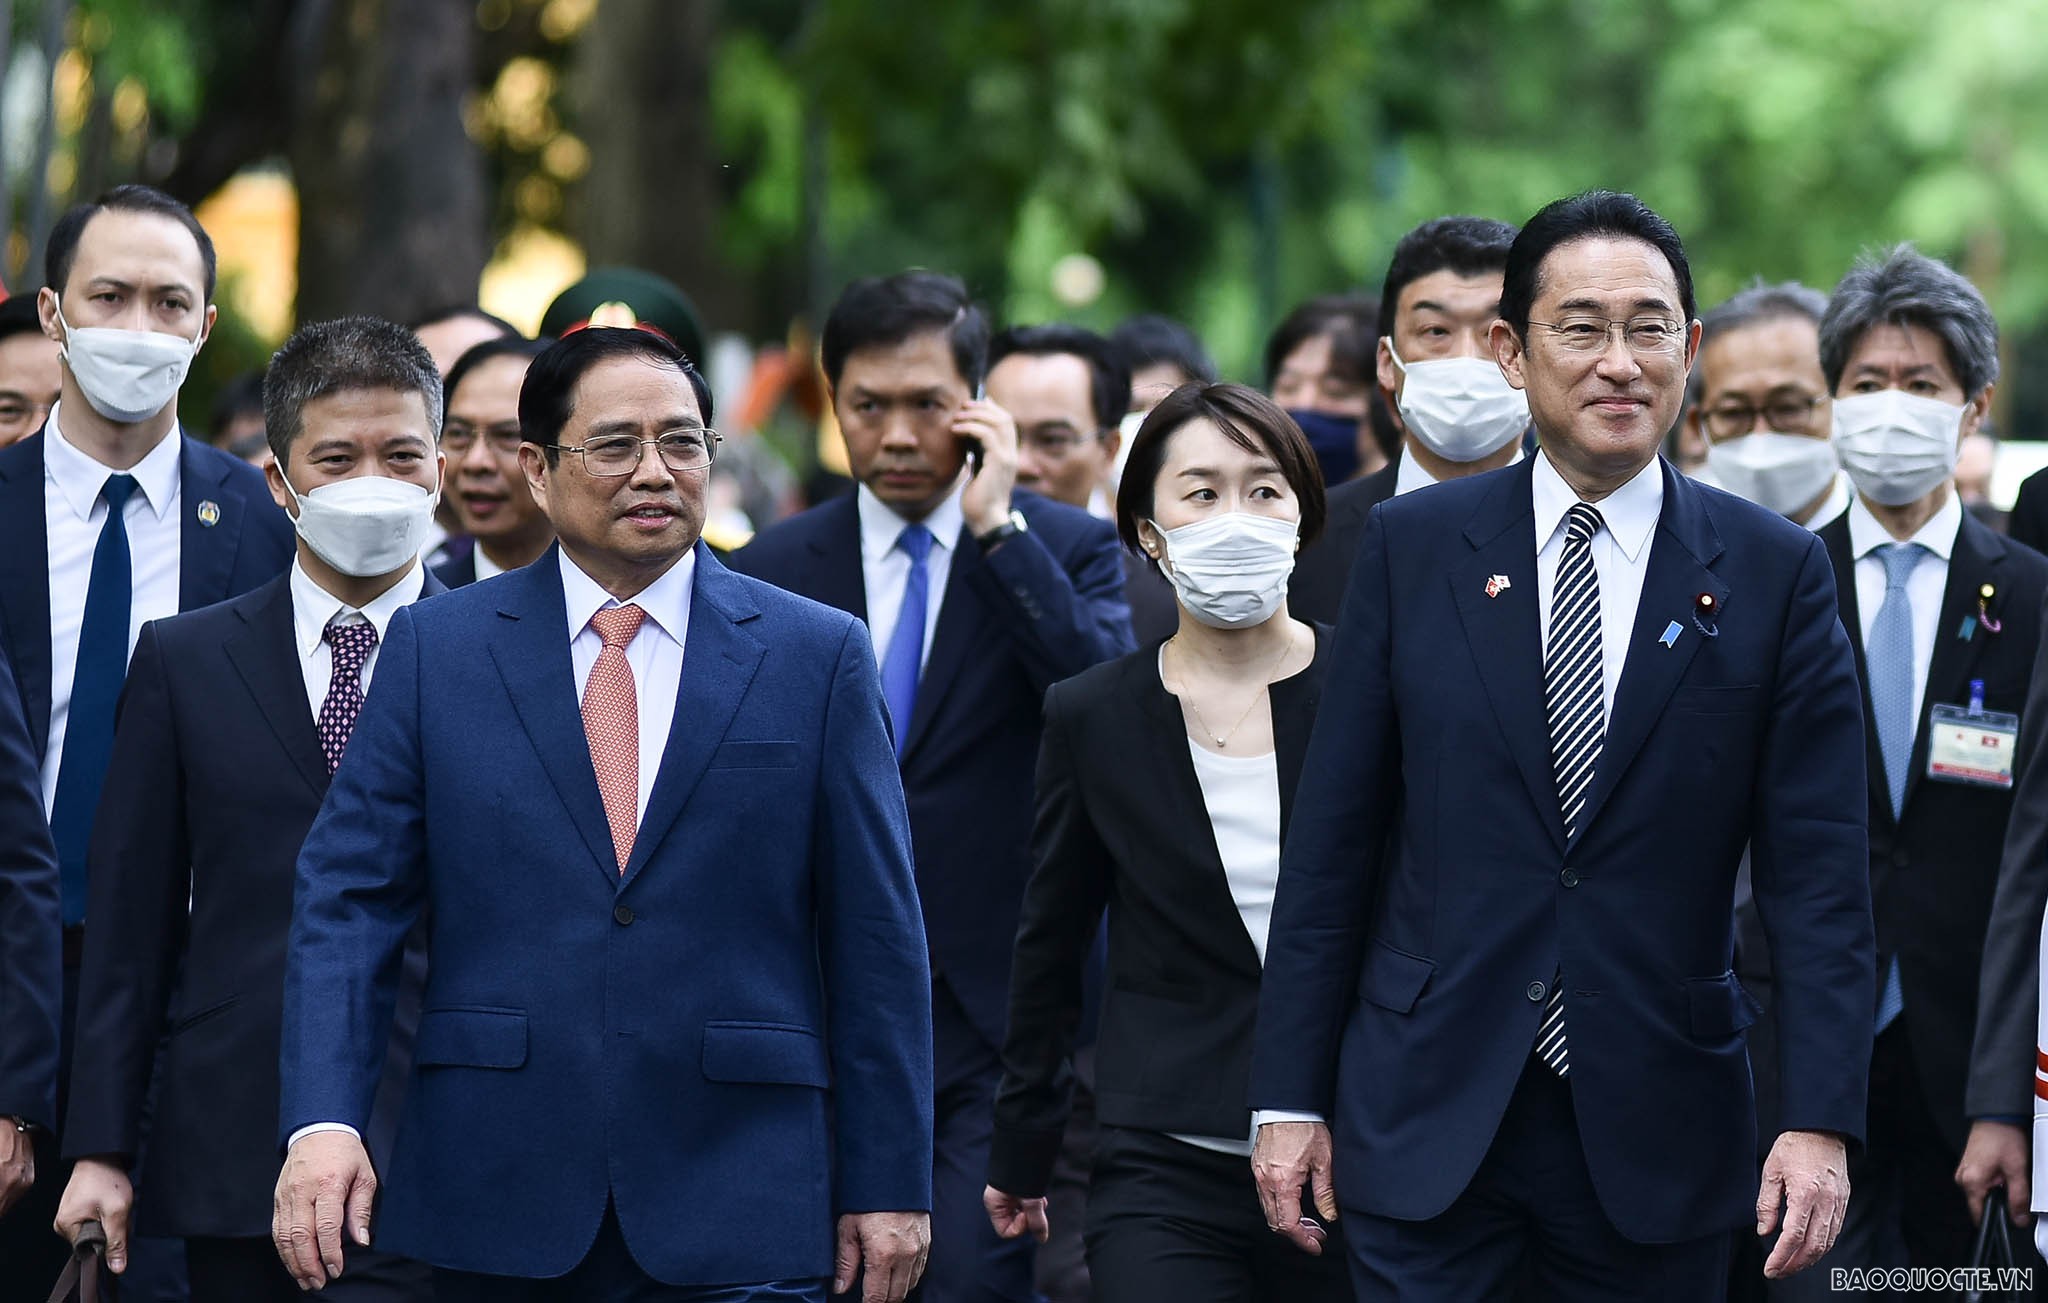 Việt Nam-Nhật Bản: Từ 'mối lương duyên' đến quan hệ đối tác chiến lược sâu rộng không giới hạn